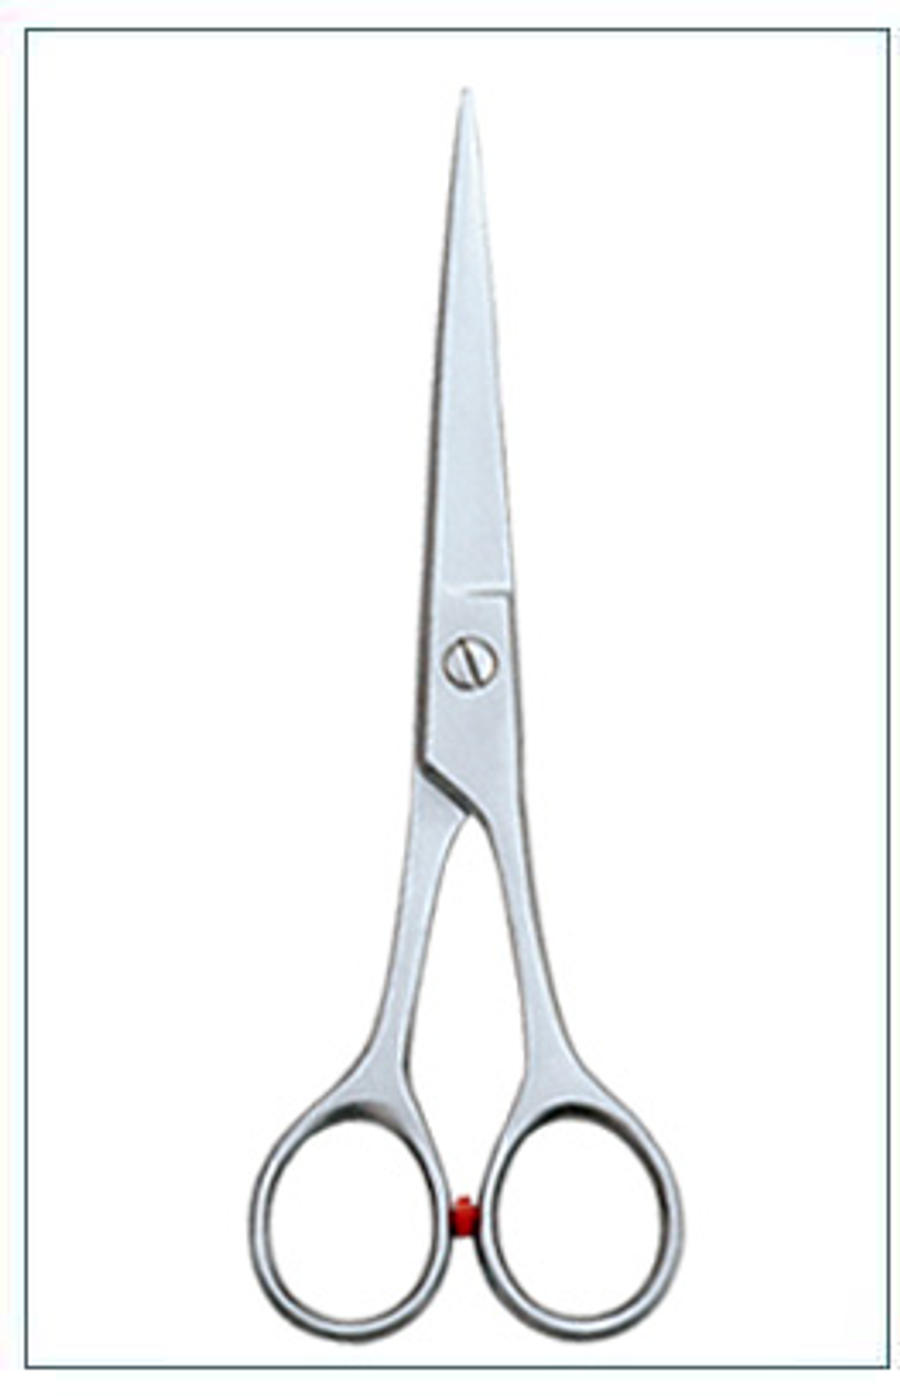 barber scissors by beautybone